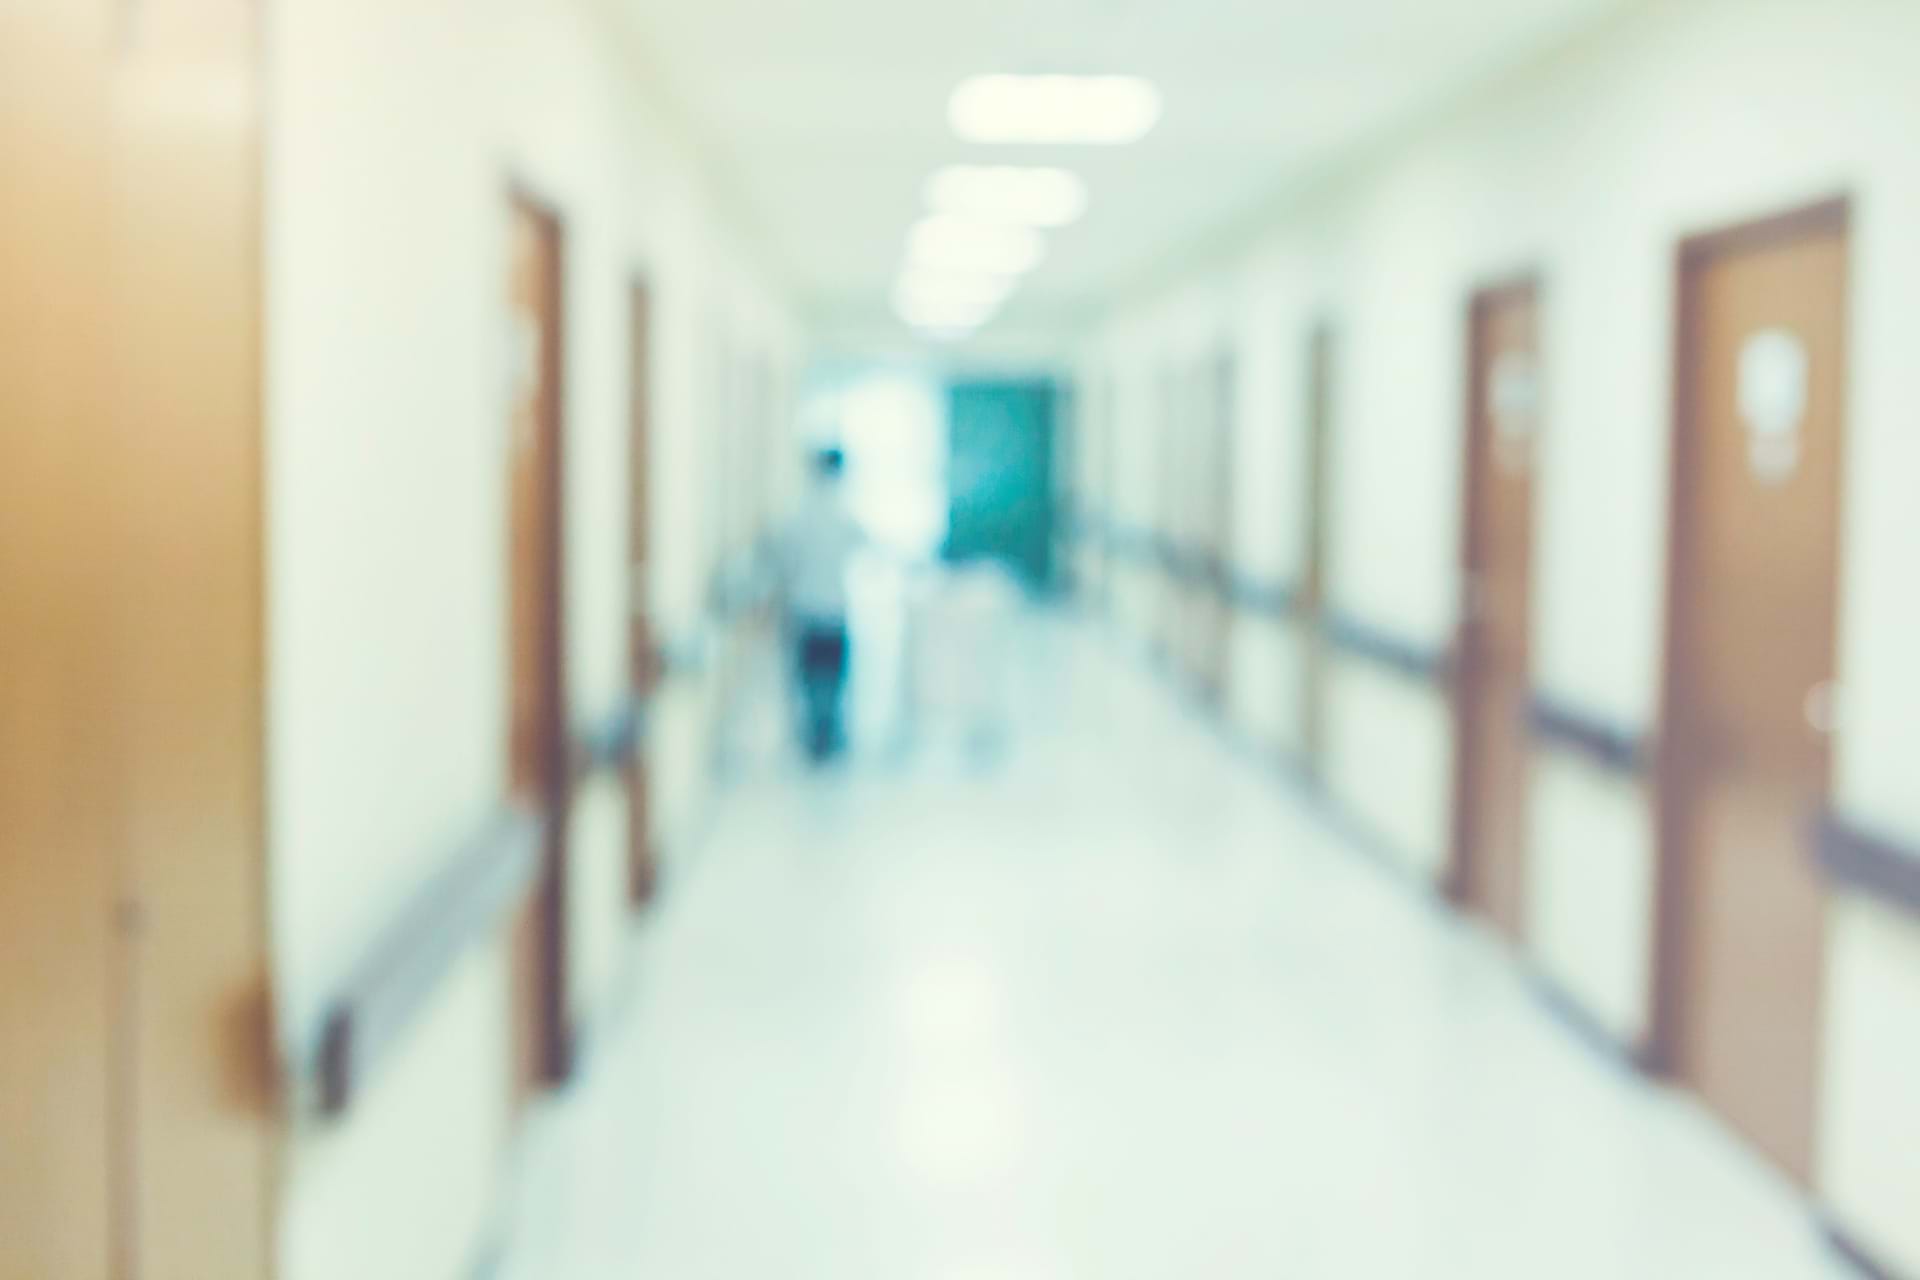 En sykehuskorridor ute av fokus. Illustrasjonsfoto: Colorbox